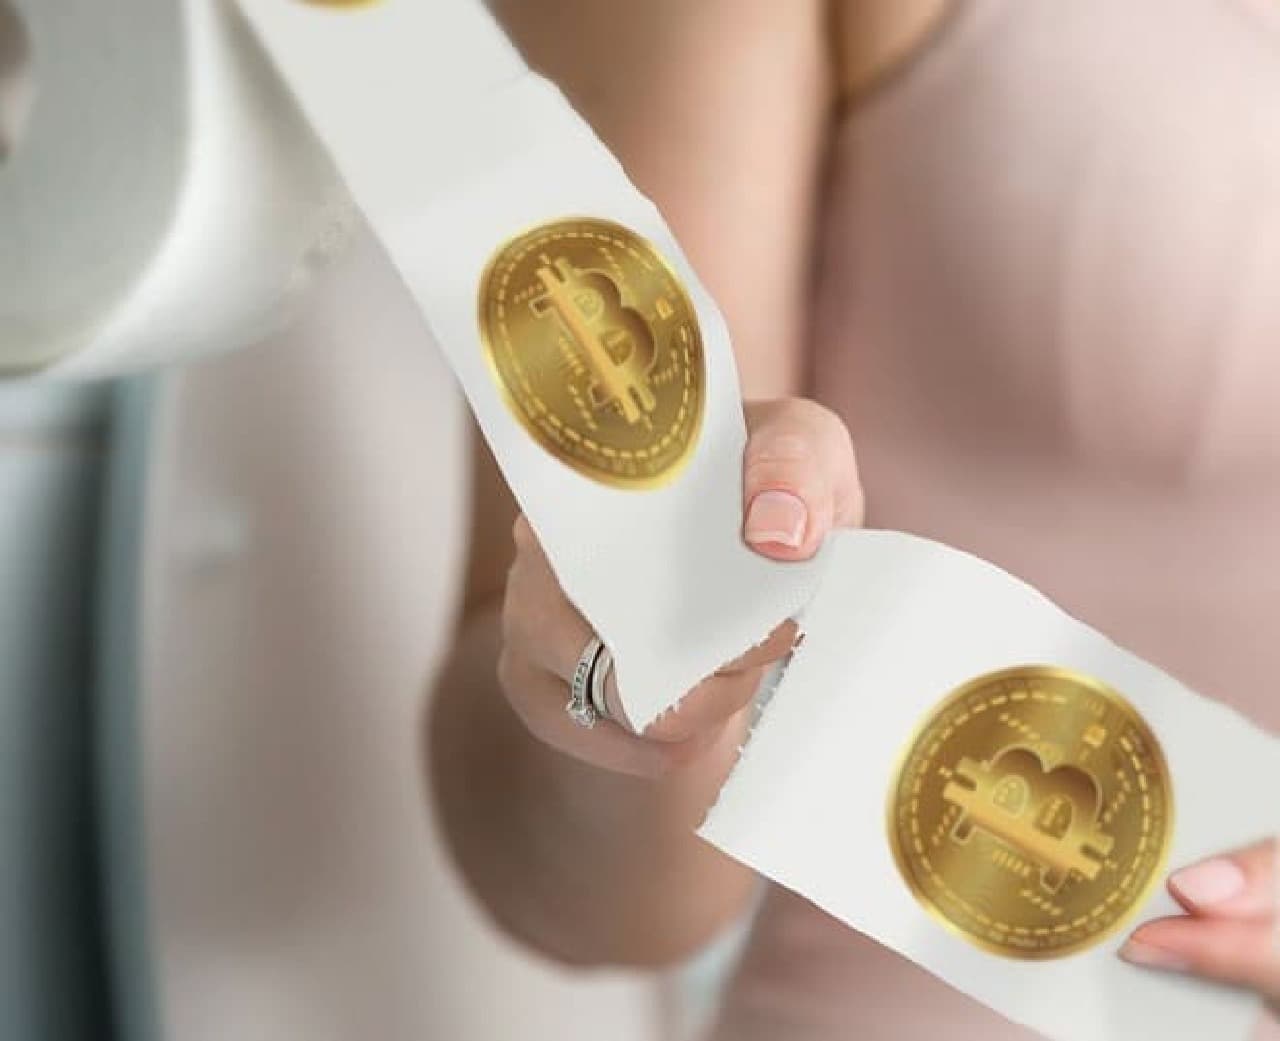 ビットコインのイメージ画像がプリントされたトイレットペーパー「Bitcoin Toilet Paper Roll」